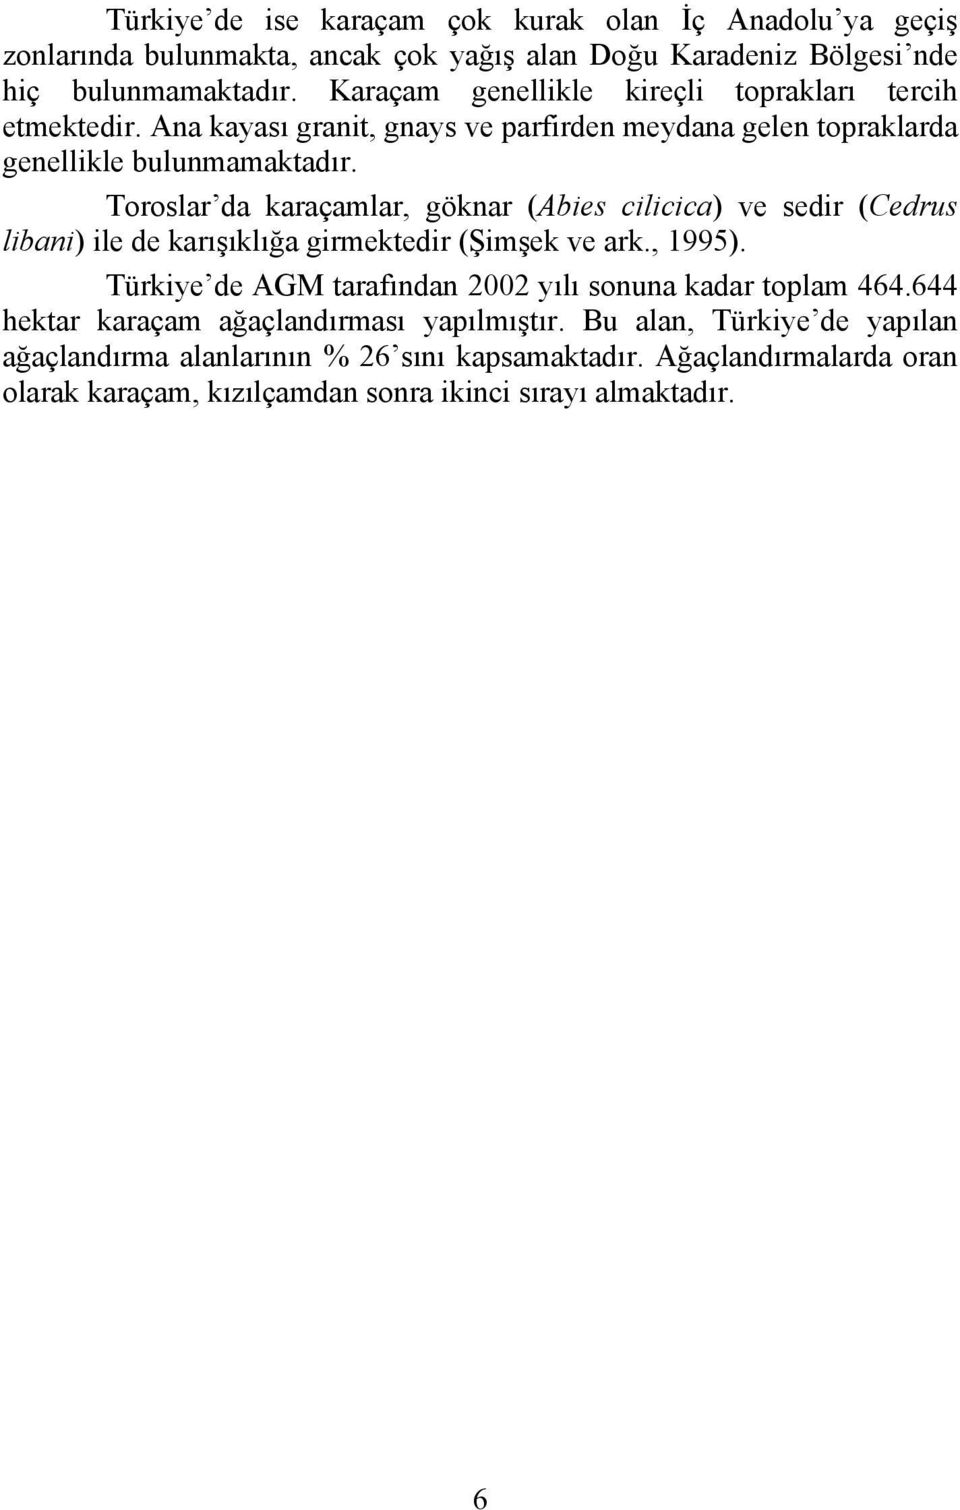 Toroslar da karaçamlar, göknar (Abies cilicica) ve sedir (Cedrus libani) ile de karışıklığa girmektedir (Şimşek ve ark., 1995).